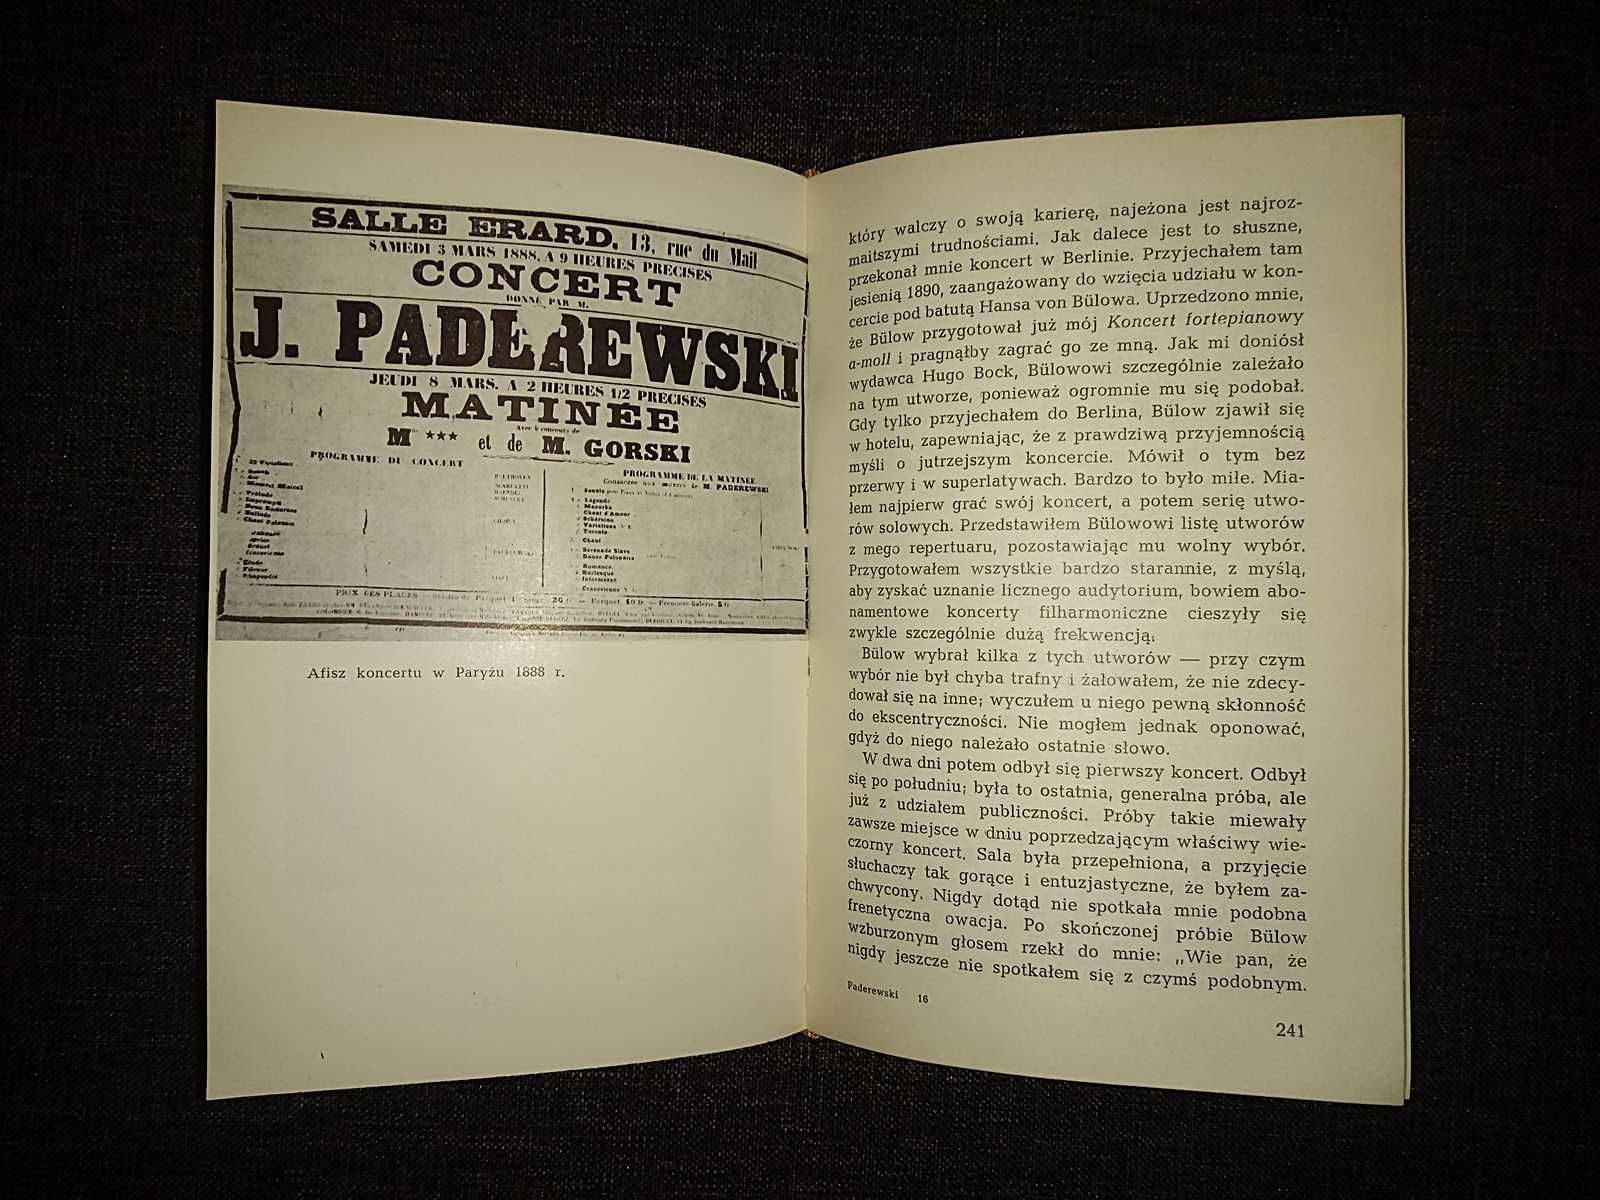 "Pamiętniki" Ignacy J. Paderewski Polskie Wydawnictwo Muzyczne 1961r